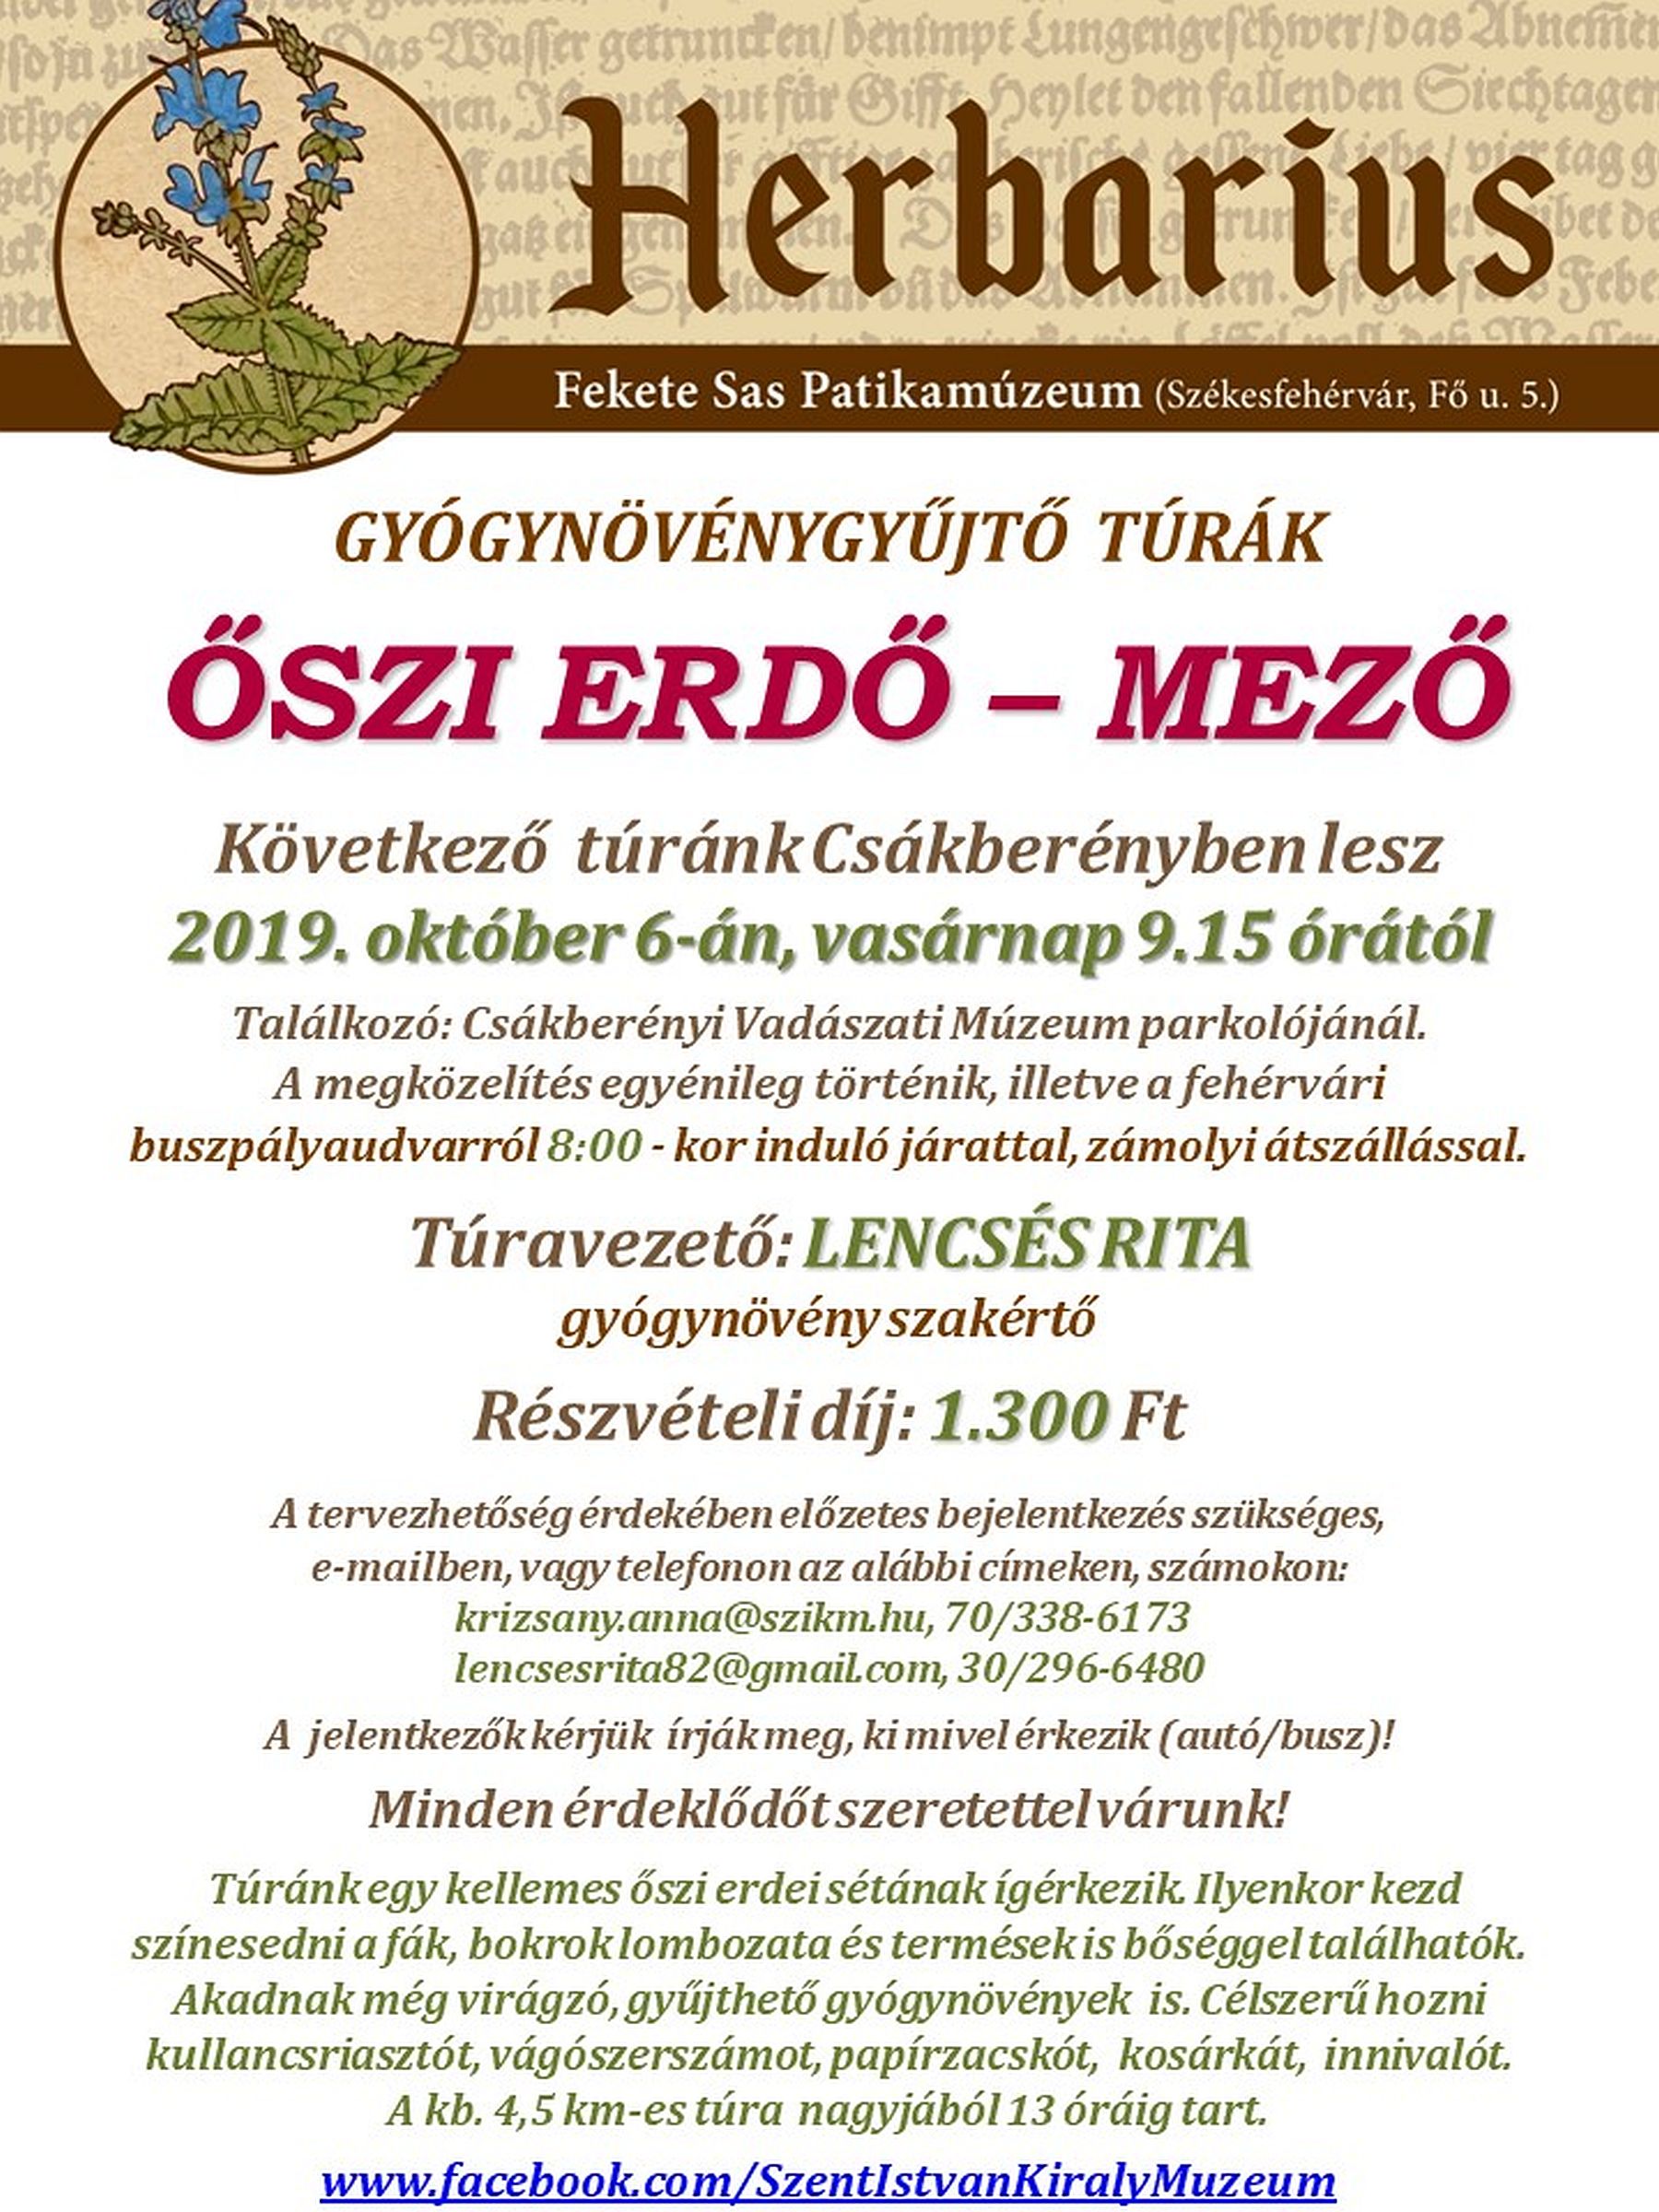 Őszi bogyók és gyógynövények - Csákberénybe indul Herbarius túra vasárnap